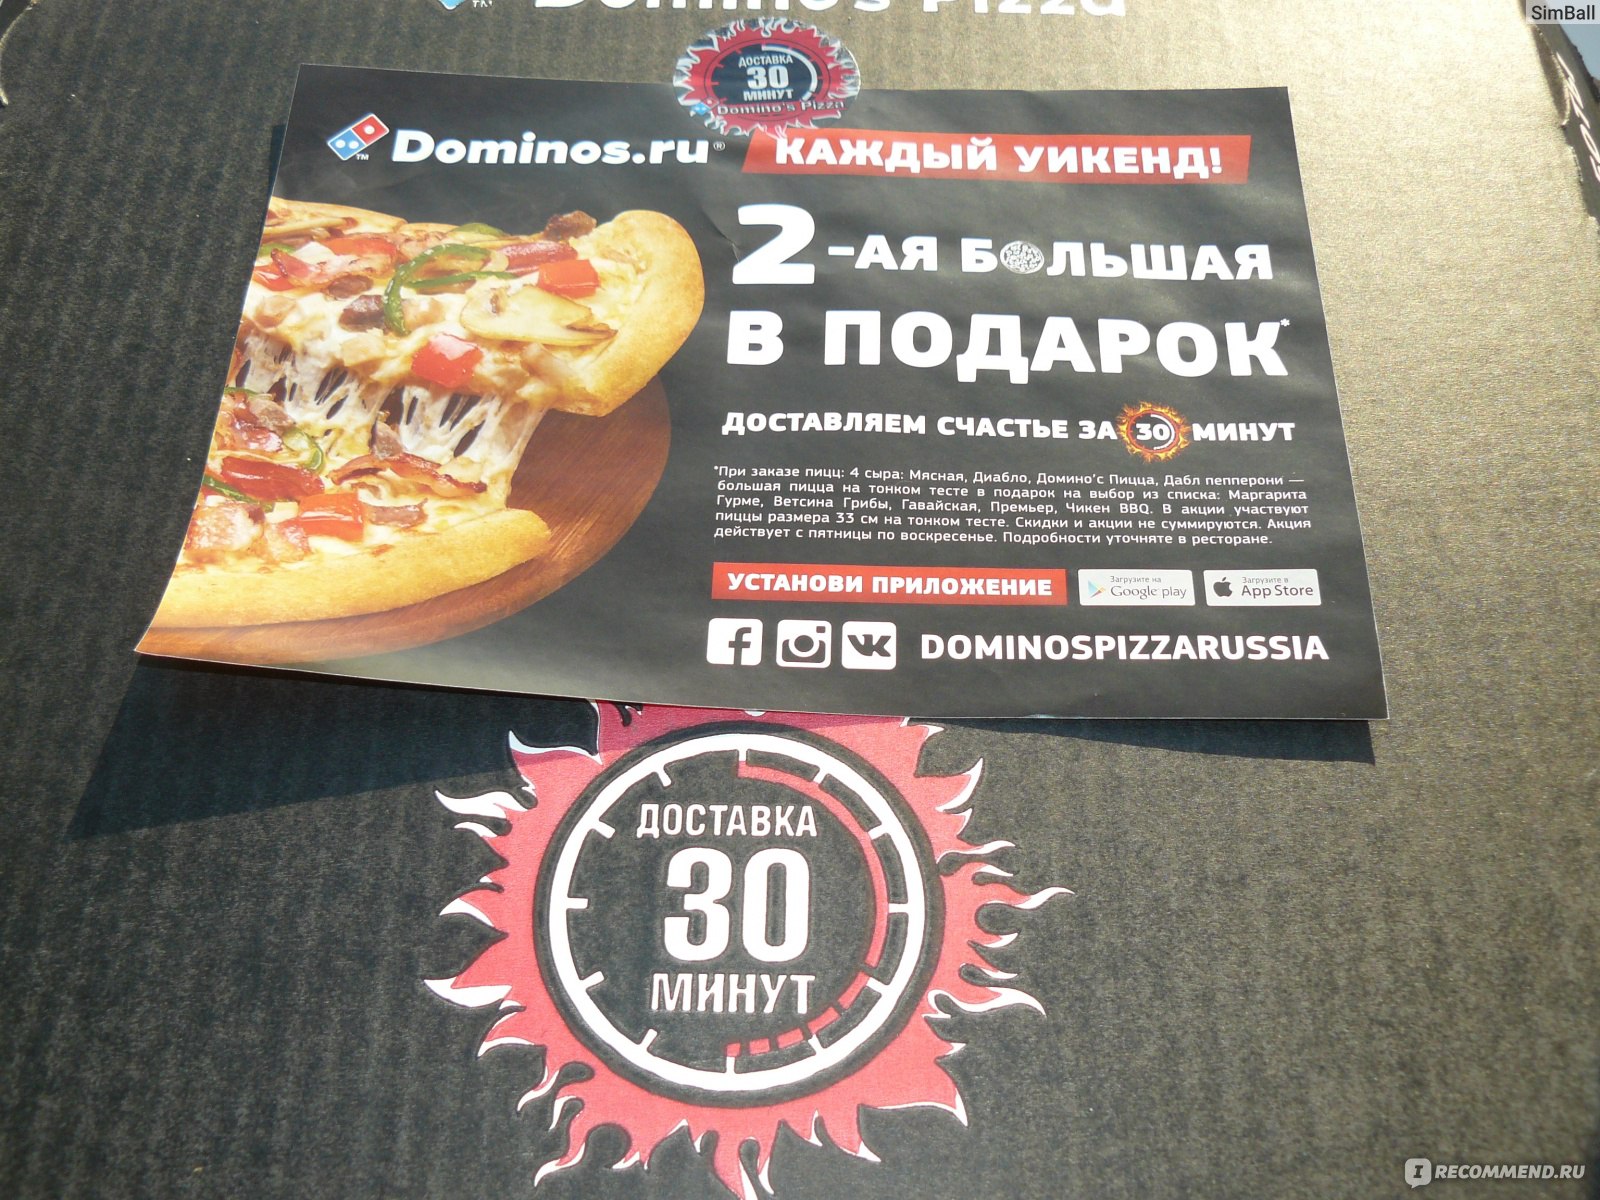 Буклет Доминос пицца